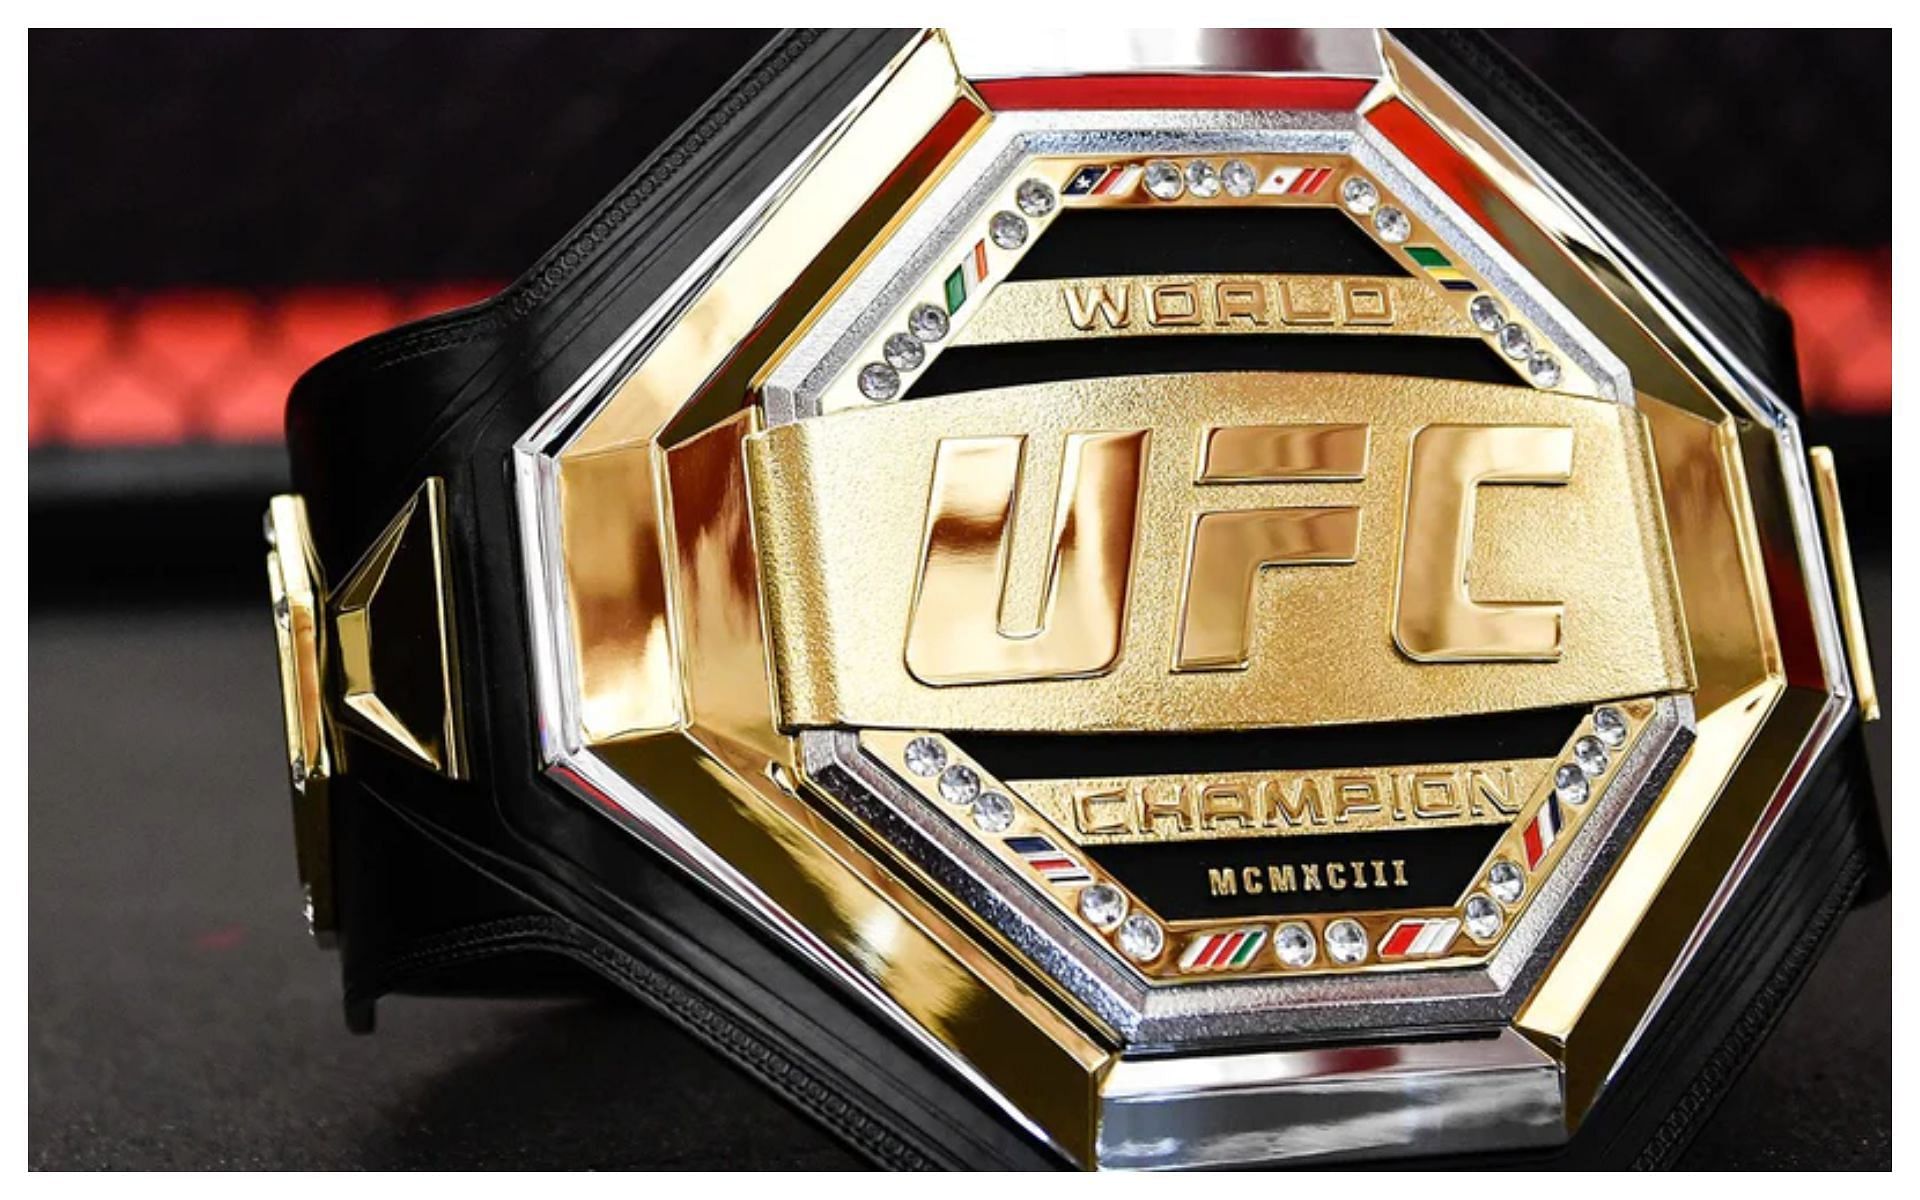 UFC lightweight championship belt 